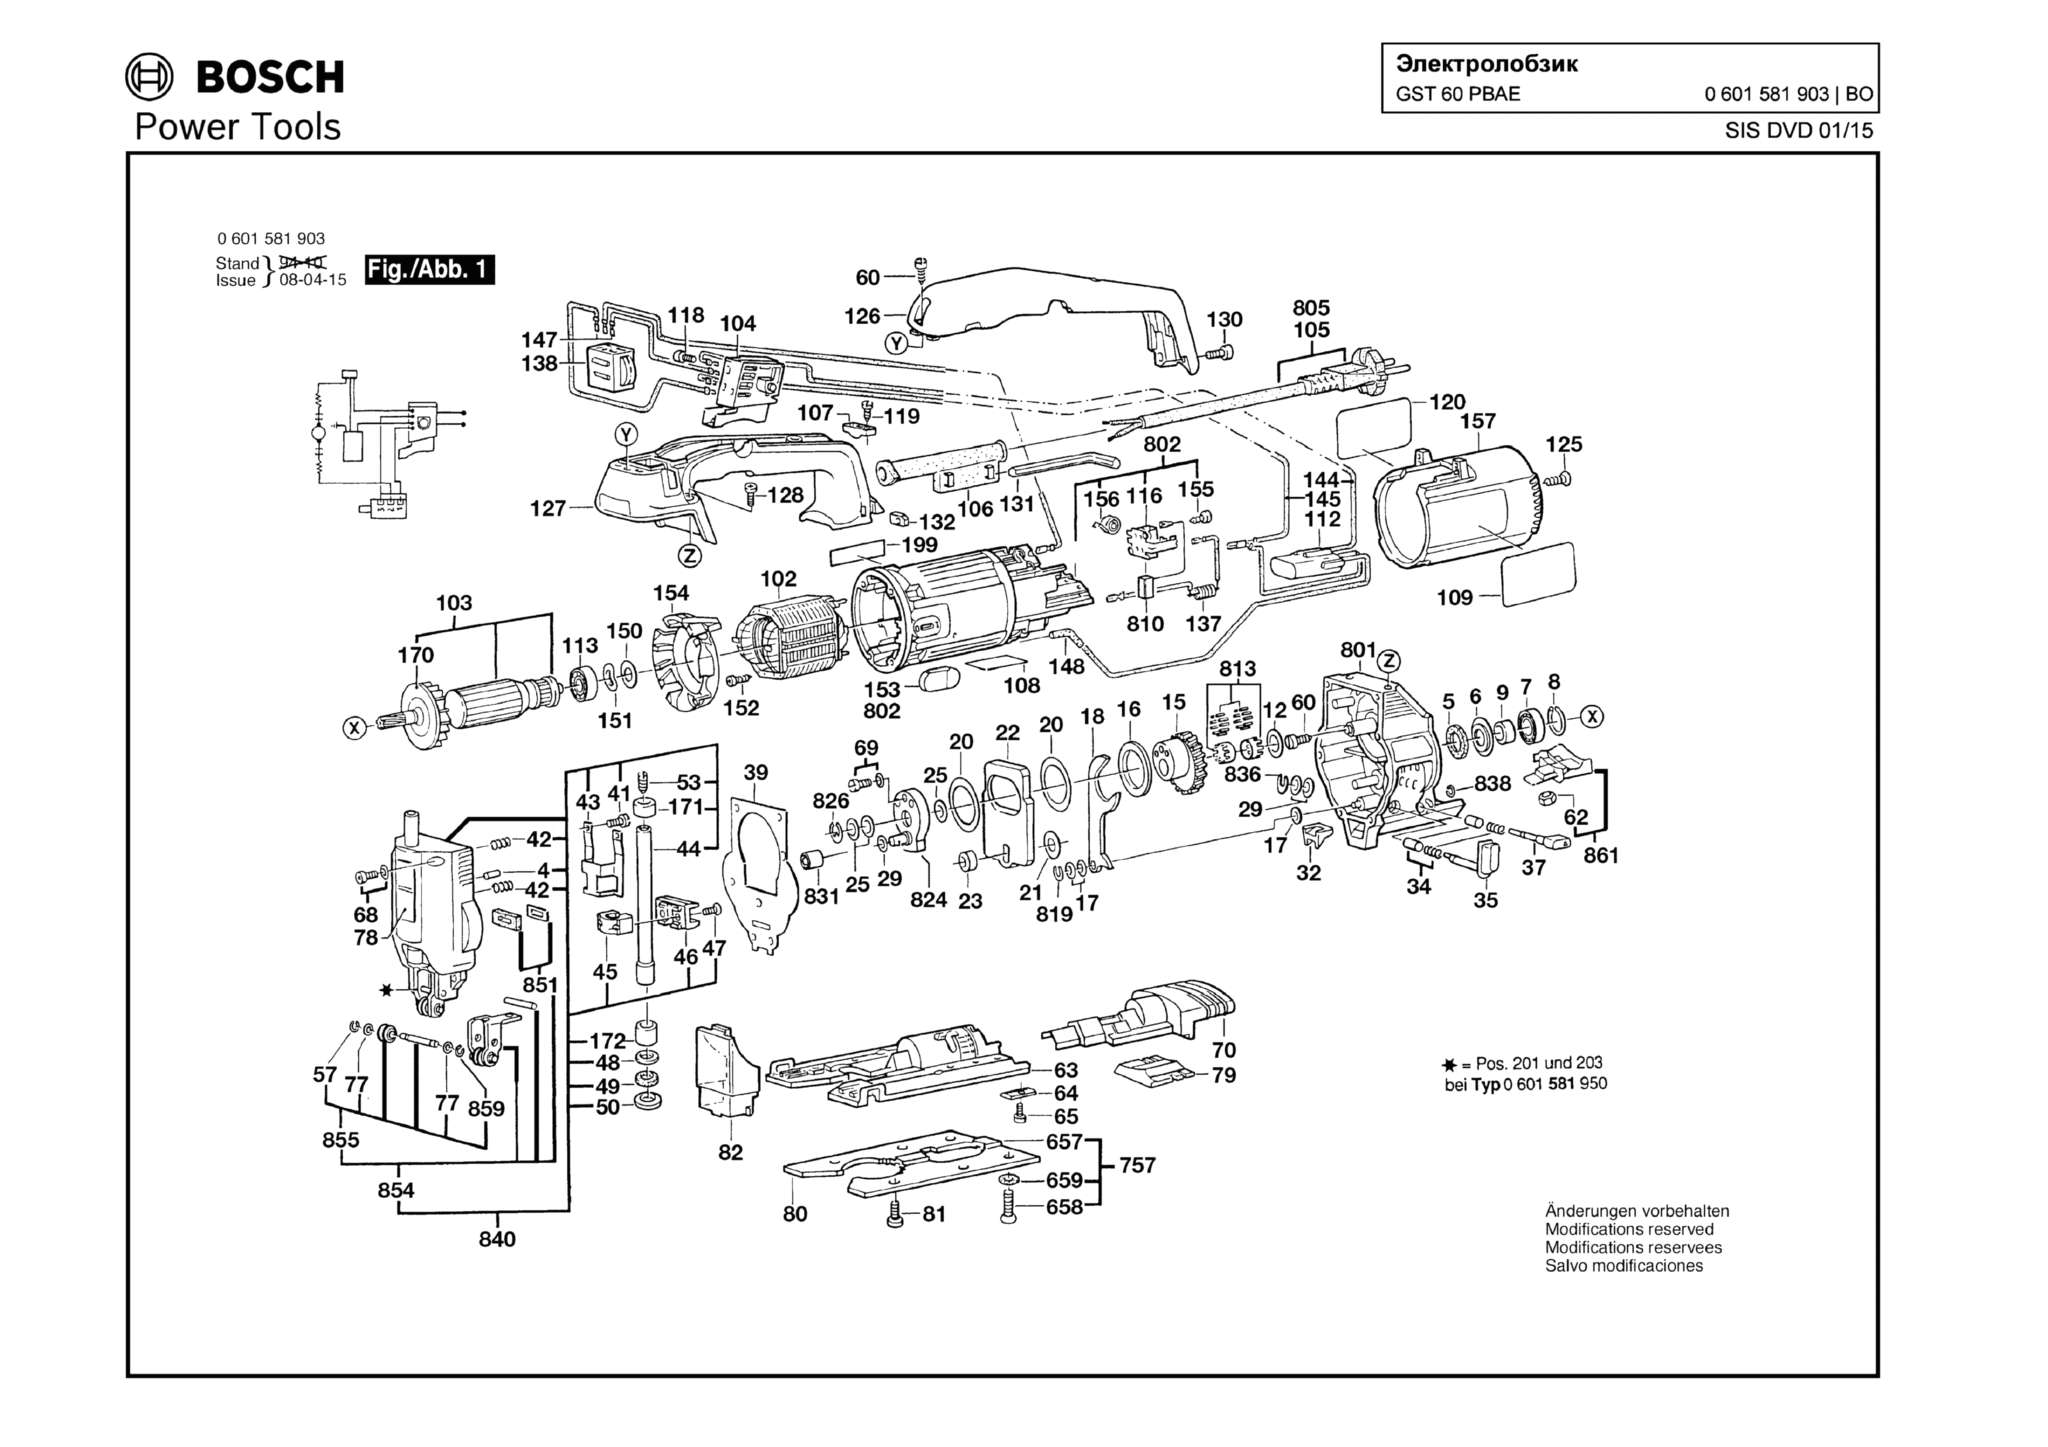 Запчасти, схема и деталировка Bosch GST 60 PBAE (ТИП 0601581903)